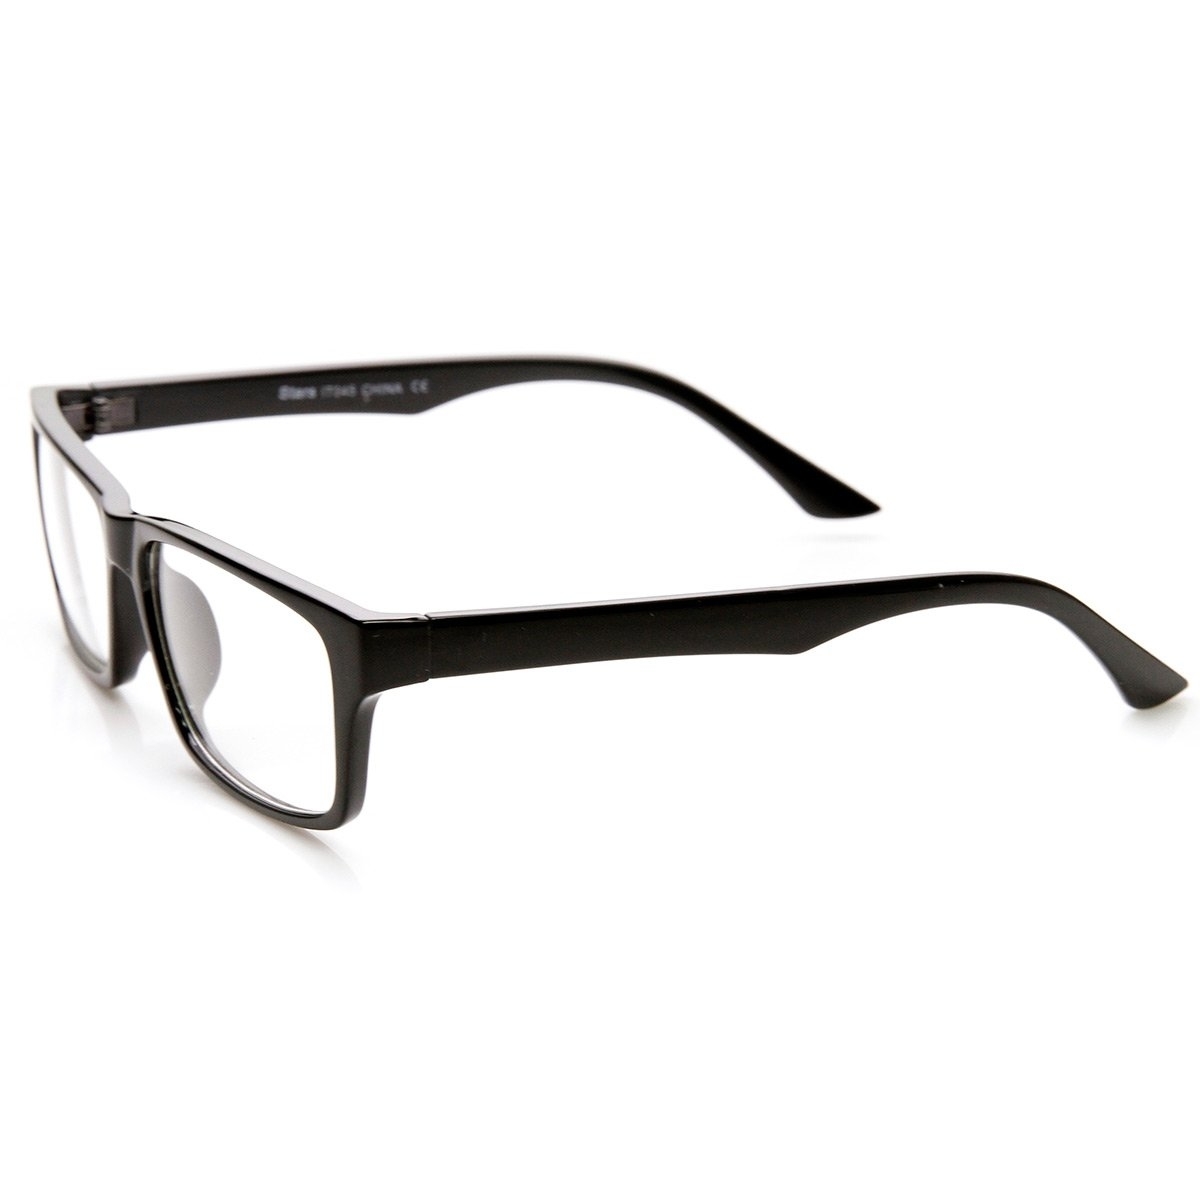 Modern Fashion Basic Mod Rectangular Clear Lens Glasses - Tortoise